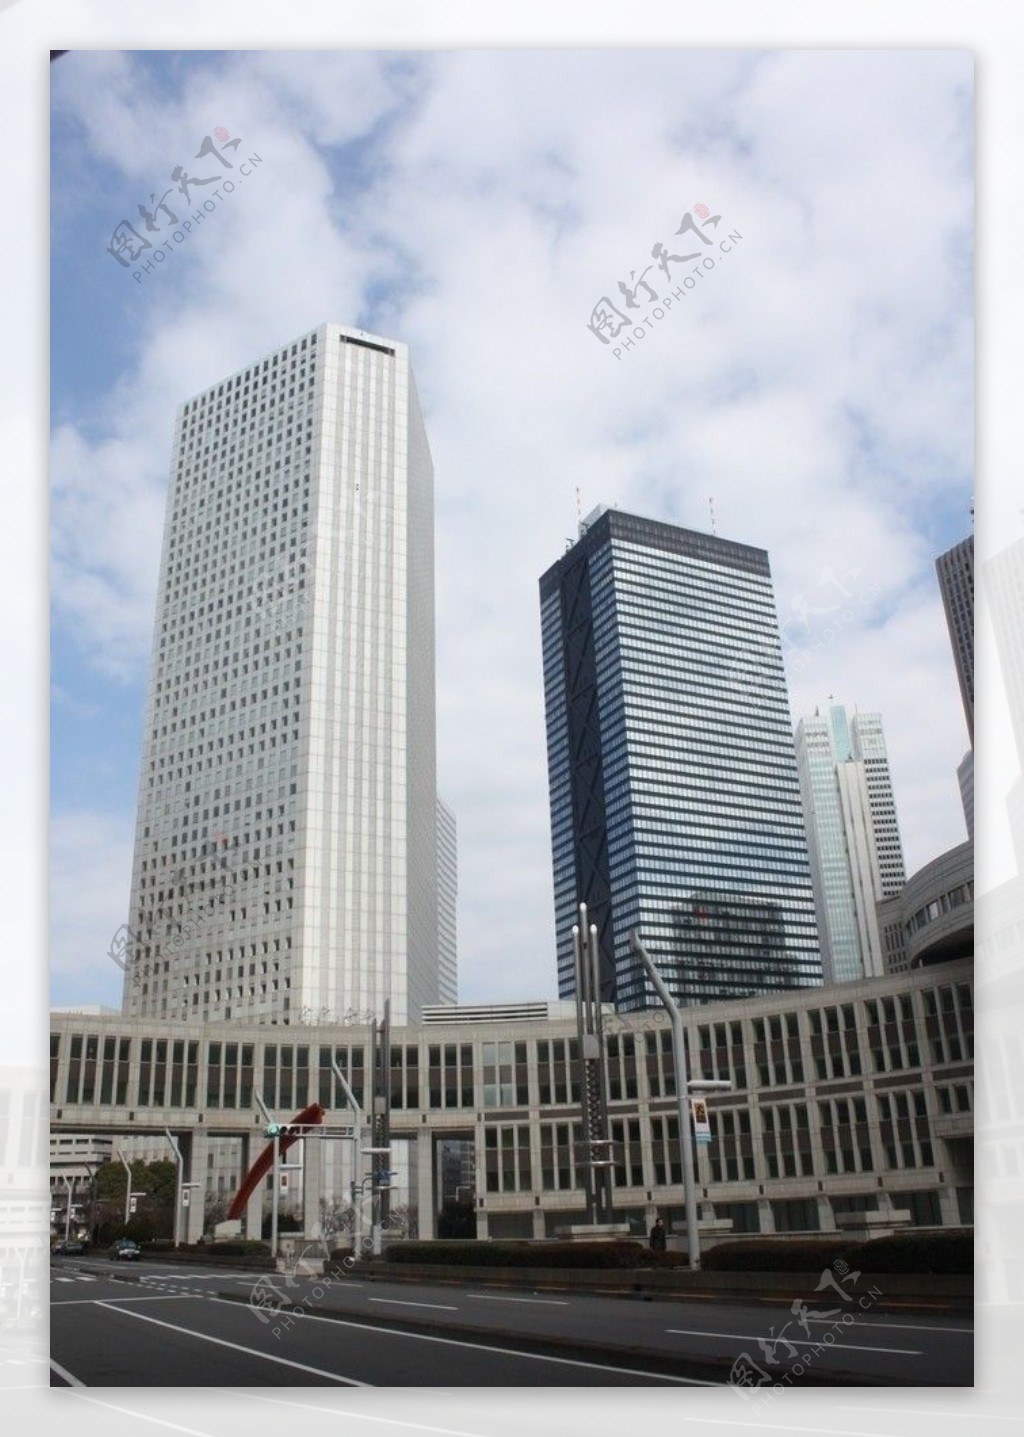 日本东京市政厅大厦图片